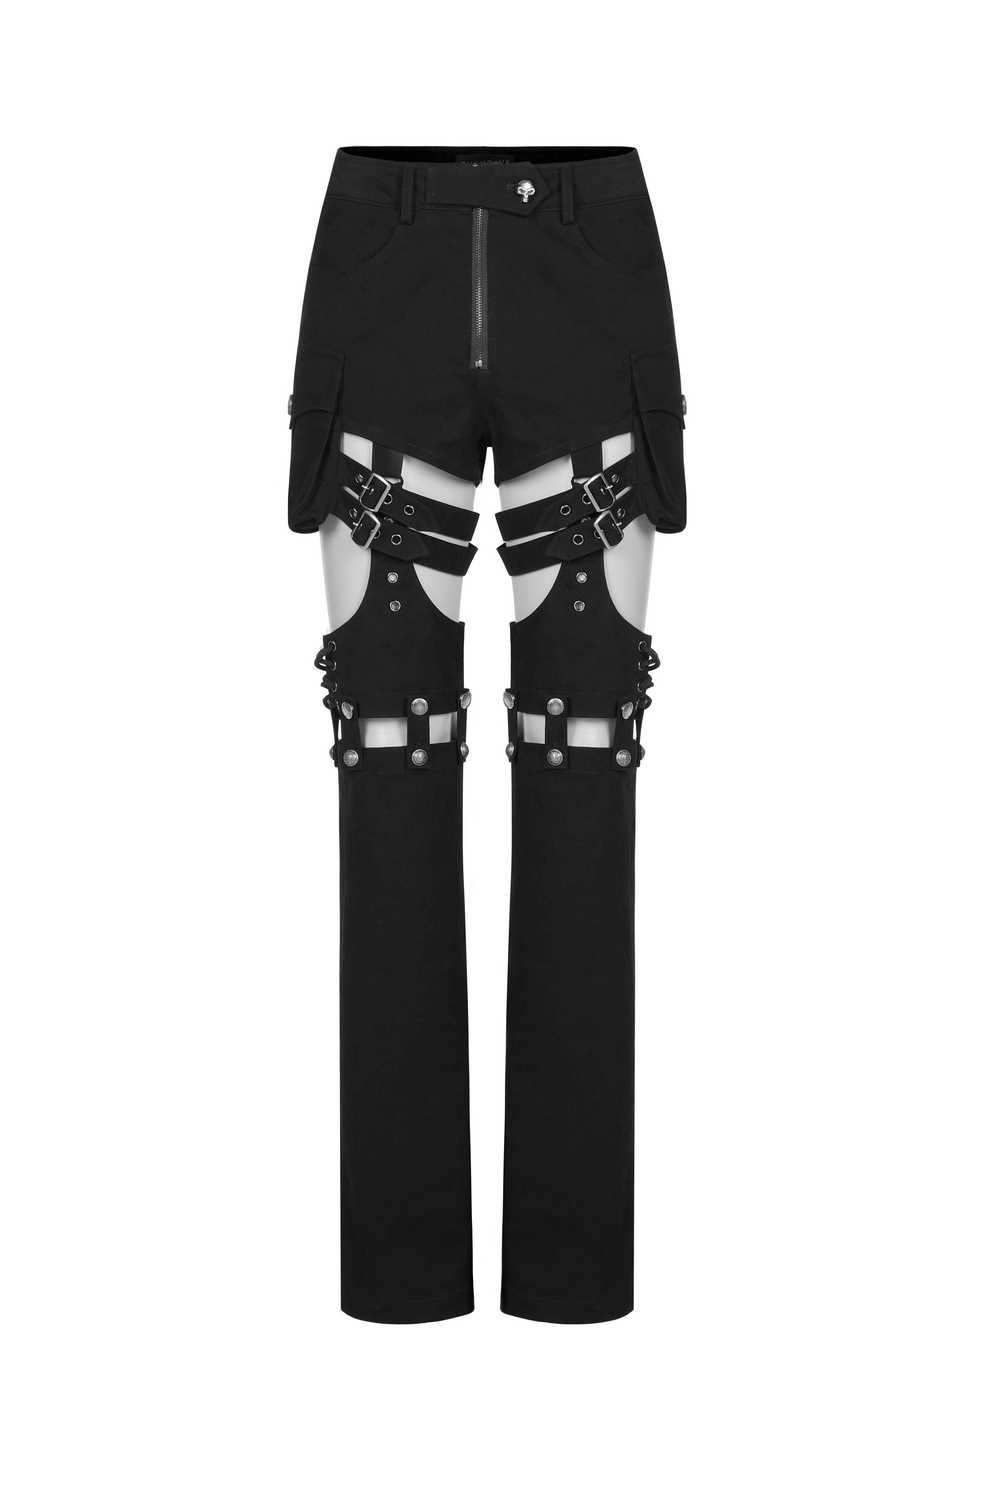 Punk Gothic Detachable Leg Trouser Pants-Shorts Black Straps